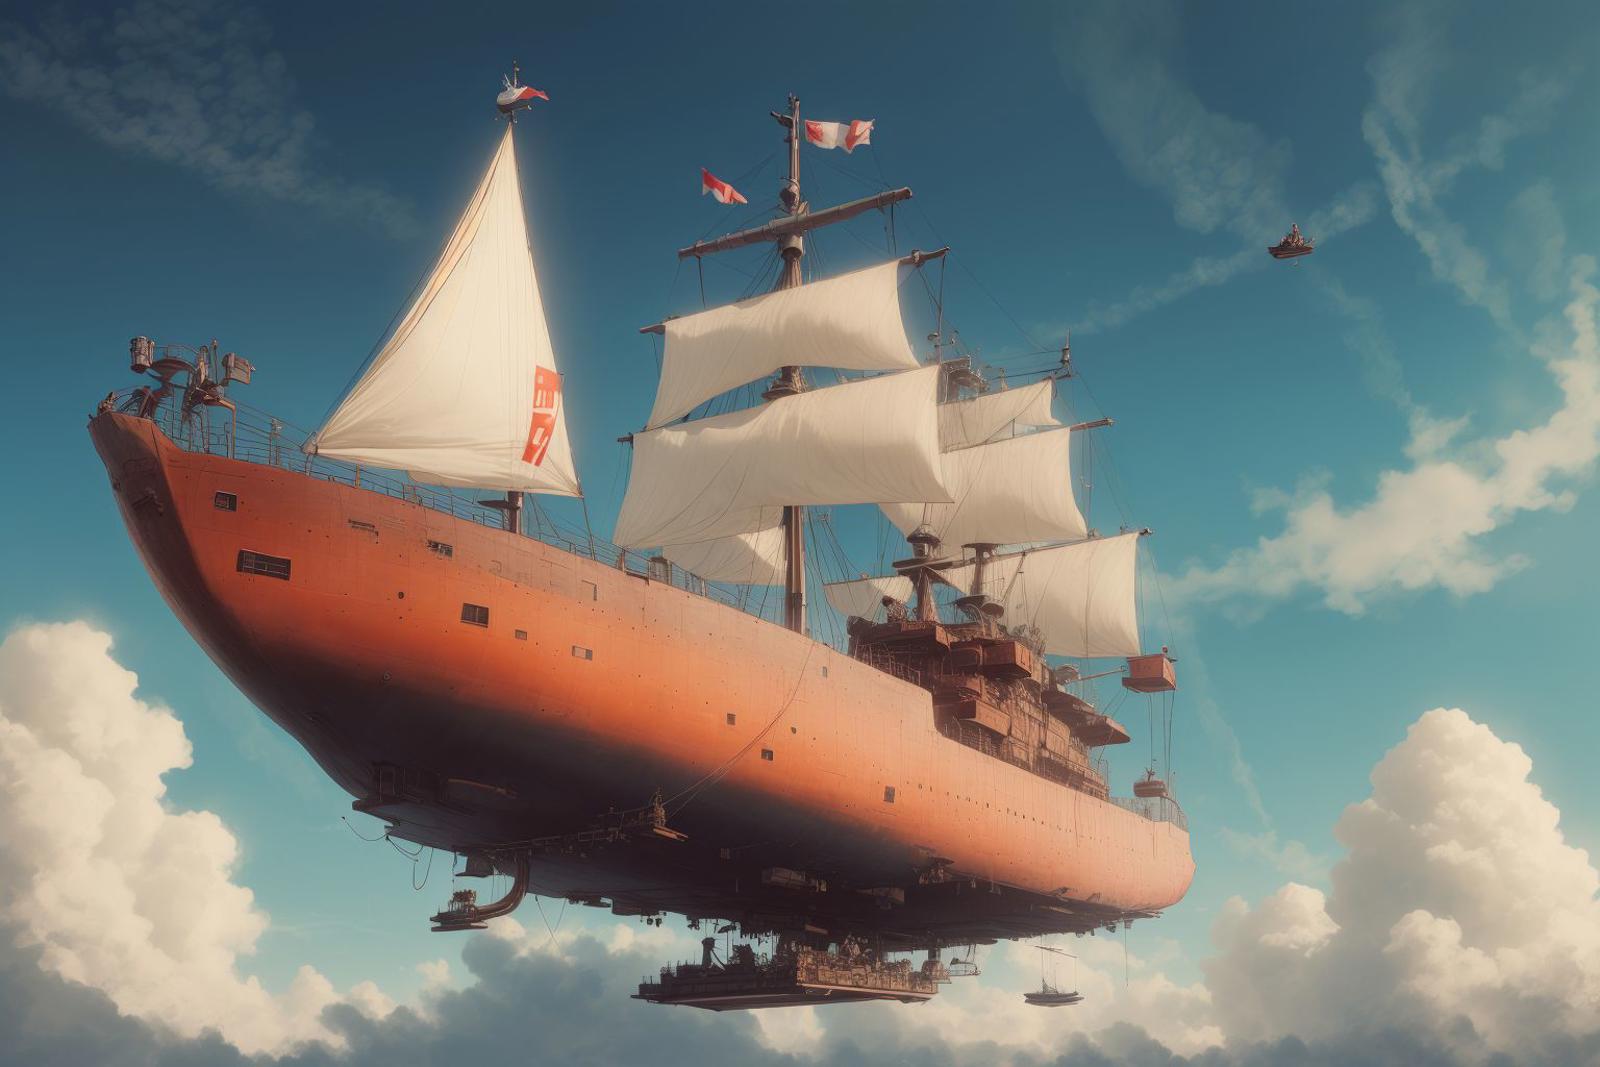  巨大飞空艇  Giant airship image by ChaosOrchestrator